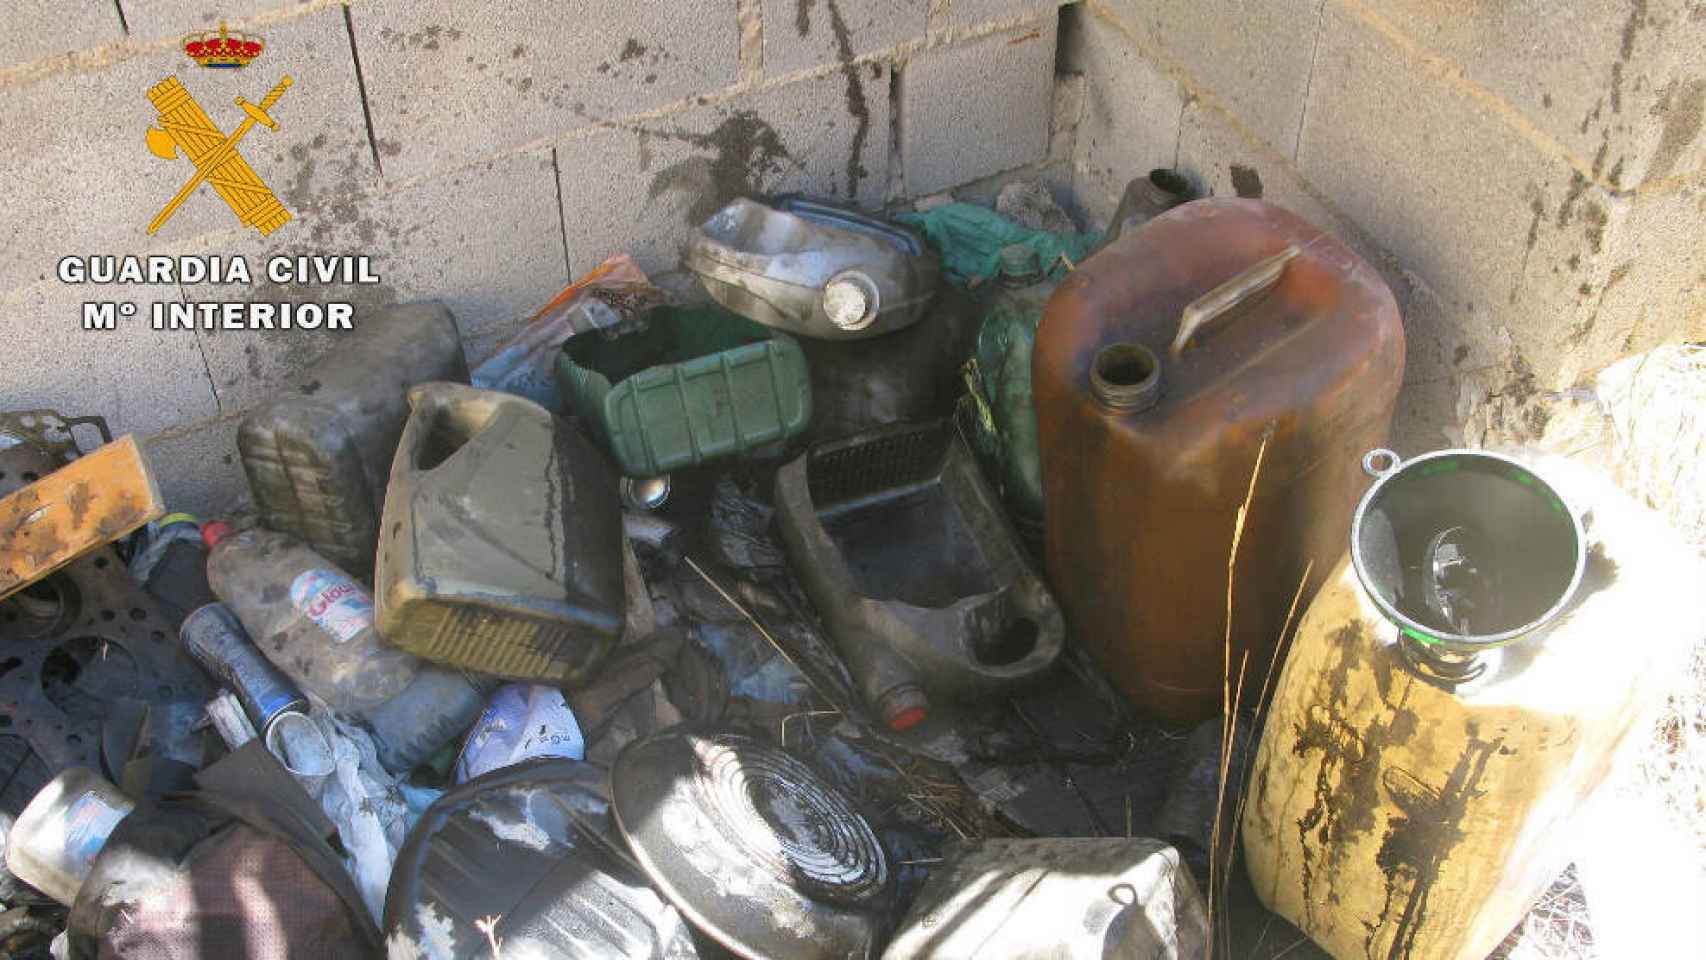 Efectos del taller mecánico clandestino desmantelado en Hellín